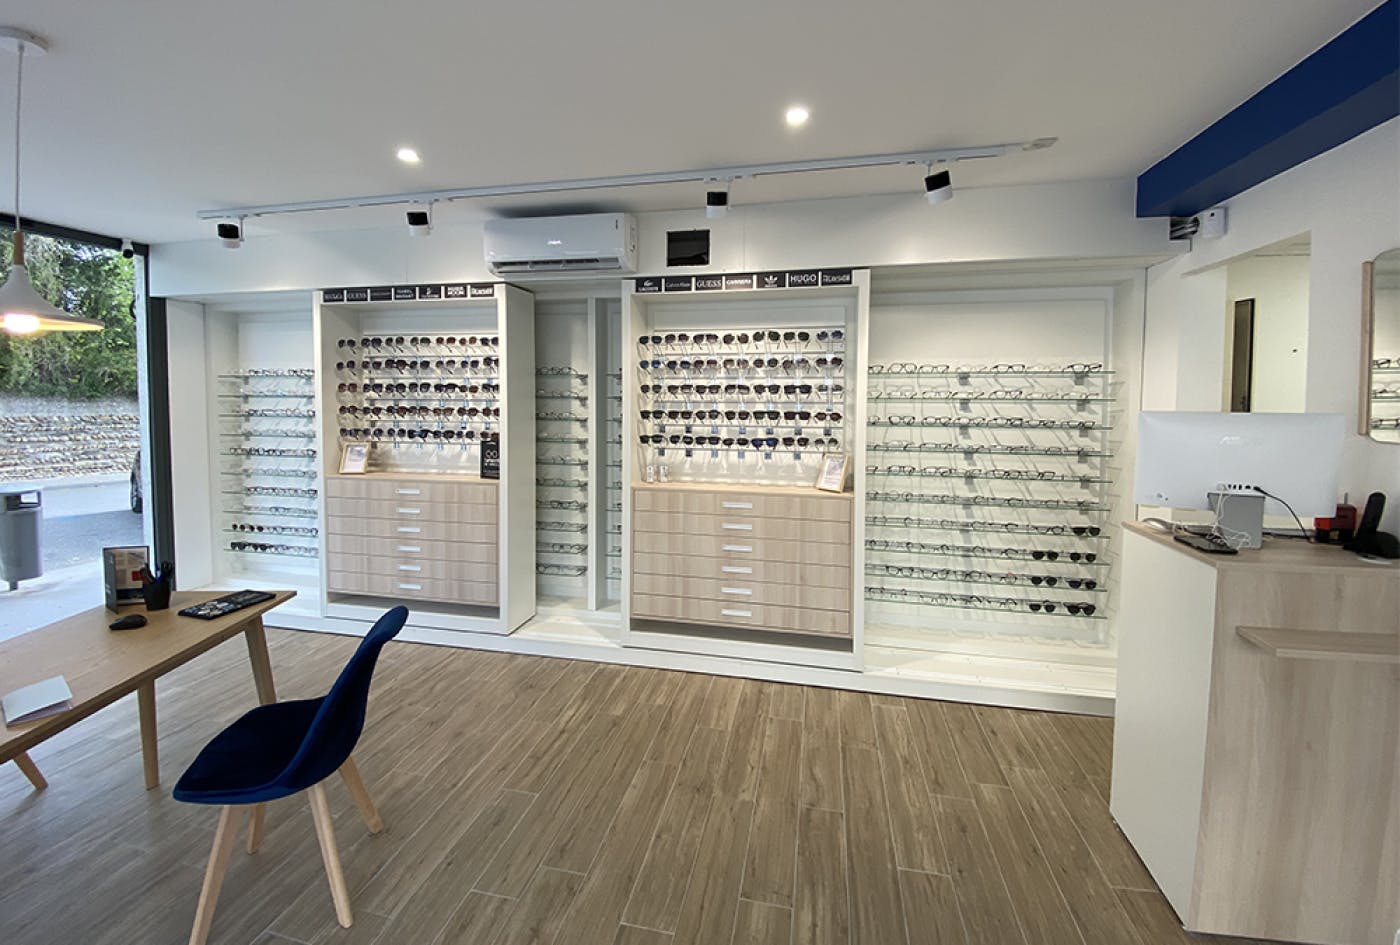 Aménagement intérieur magasin d'optique rénové par Architéa Lyon